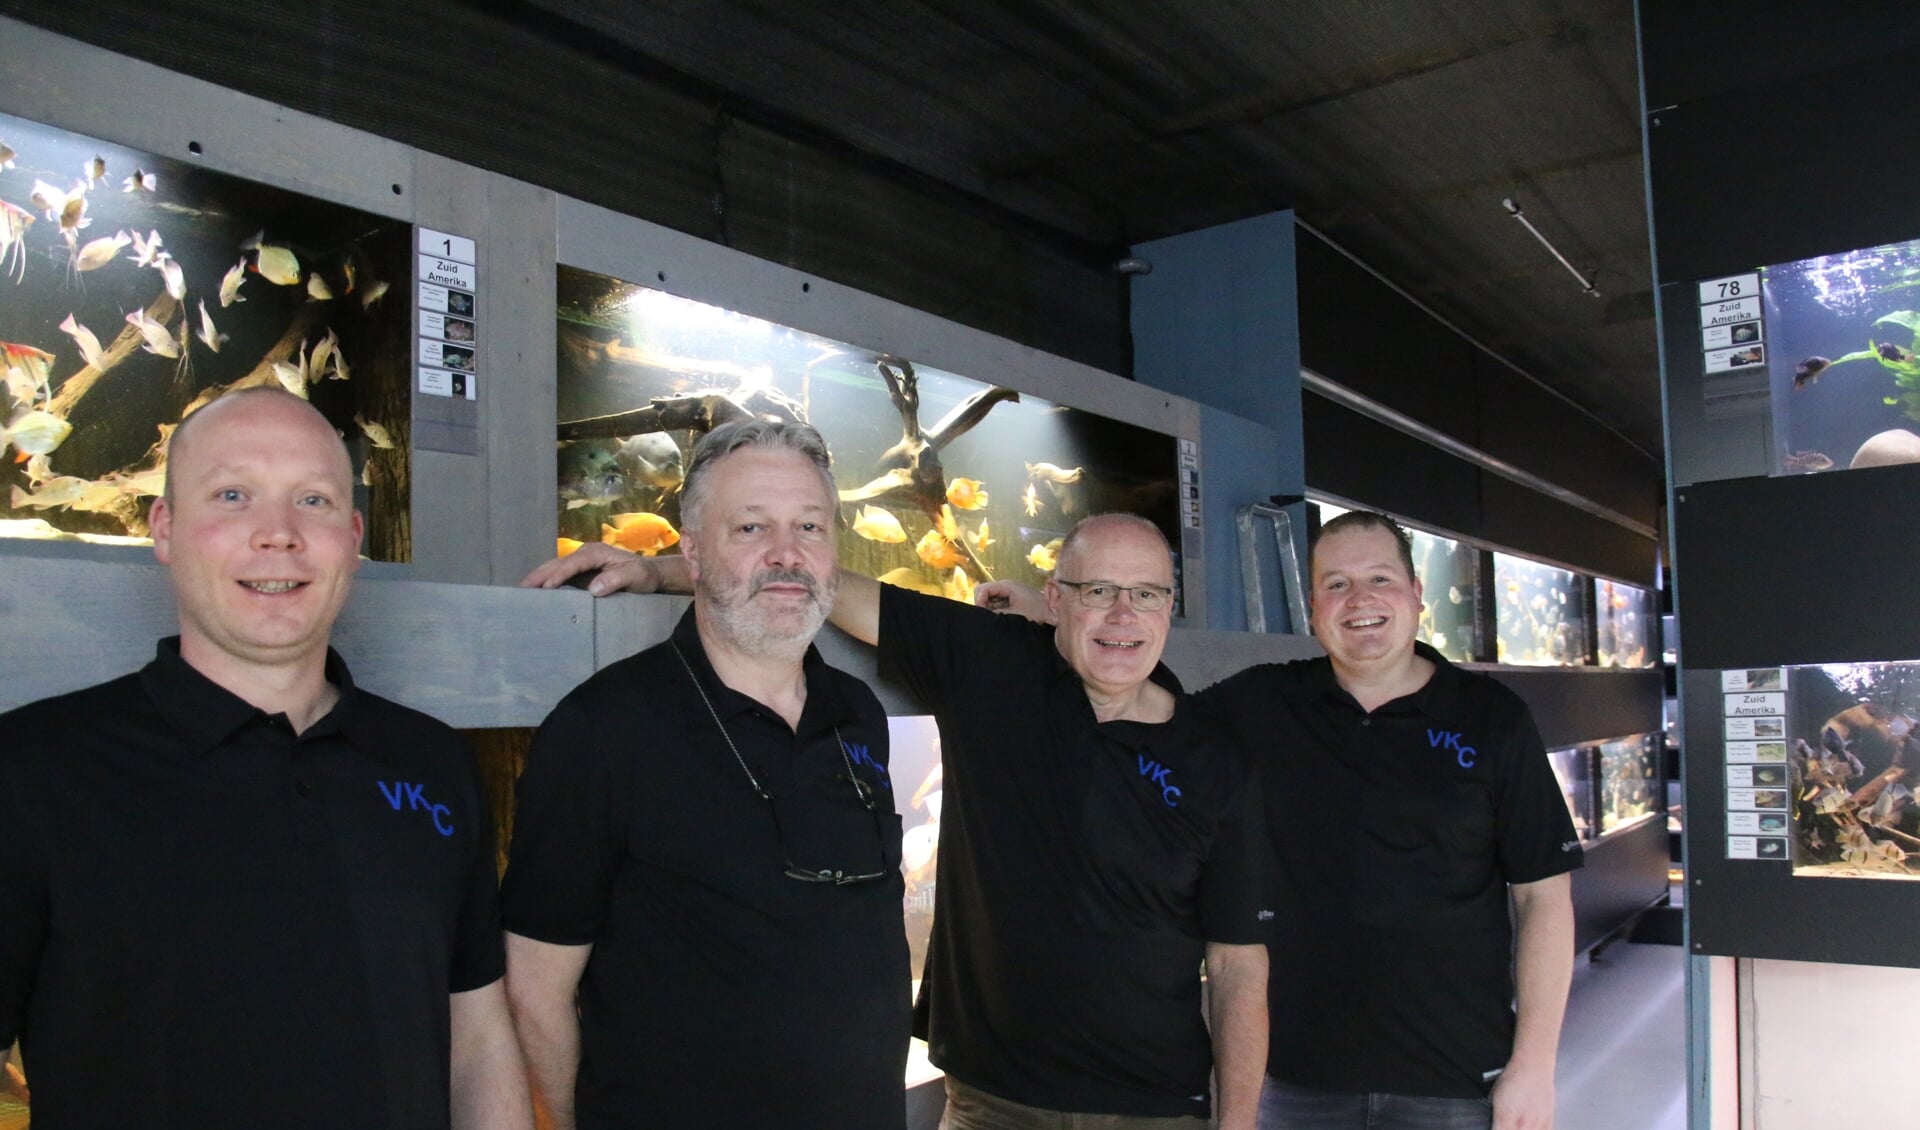 Het team van Van Keulen Cichliden staat klaar om uw vragen over aquarium houden te beantwoorden in de nieuwe winkel aan de Voorstraat 5 en 7